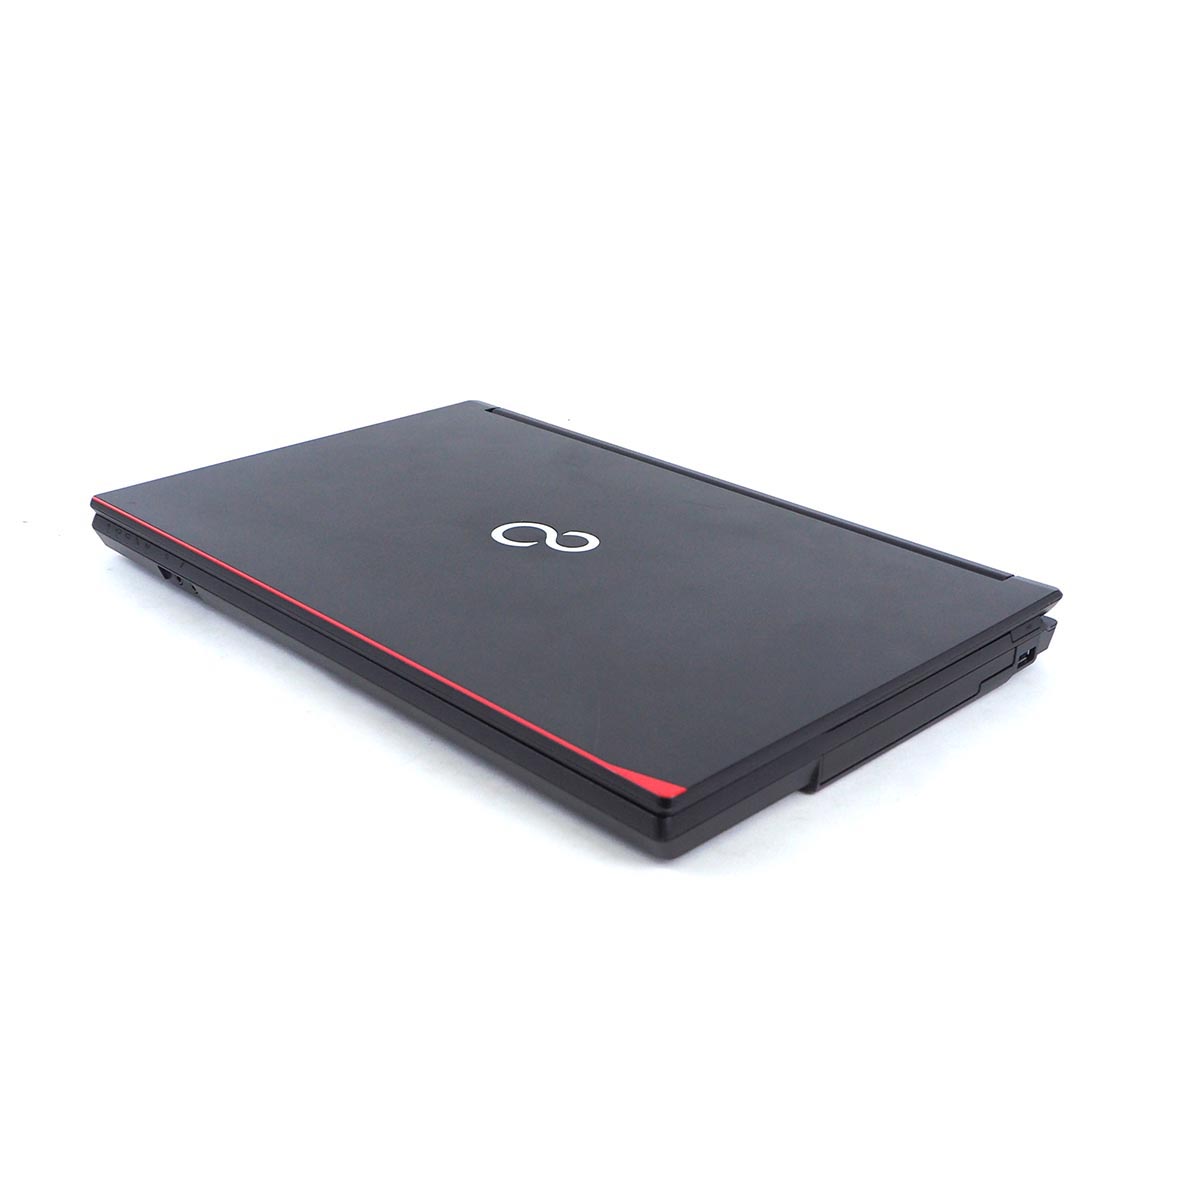 รูปภาพเพิ่มเติมของ โน๊ตบุ๊ค Fu LifeBook A577/R Celeron Gen7 / RAM 4-8GB (DDR4) HDD/SSD หน้าจอ 15.6 นิ้ว คีย์แยก Wifi-Blth ในตัว Refhed laptop used notebook คอมพิวเตอร์ 2022 มีประกัน By Totalsol